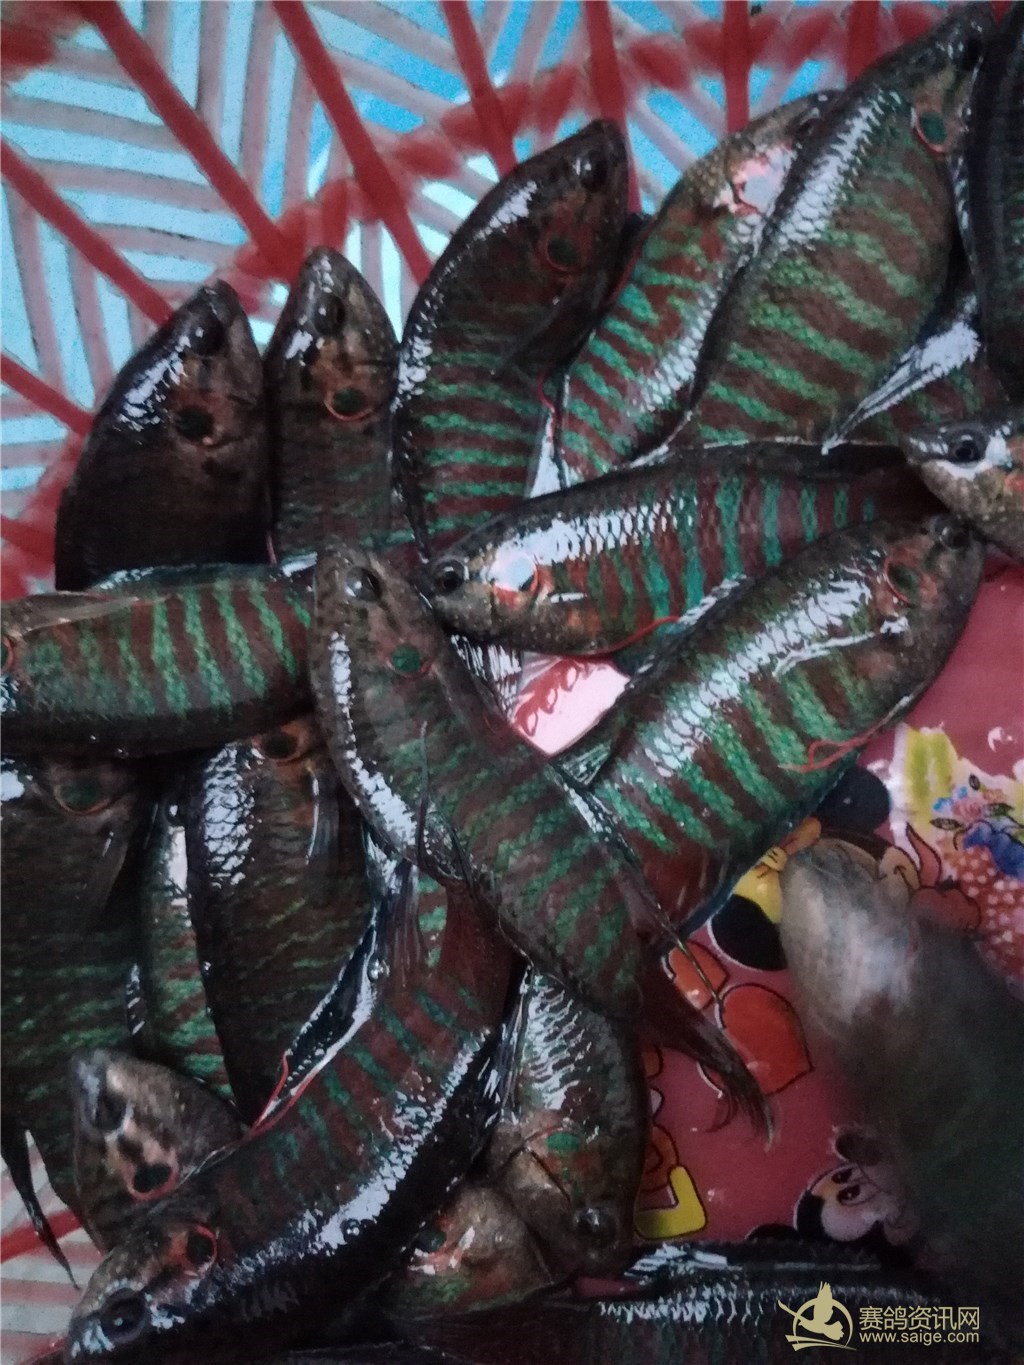 澄海野生斗鱼又称七段锦,潮语称为"沙蟒",零售批发